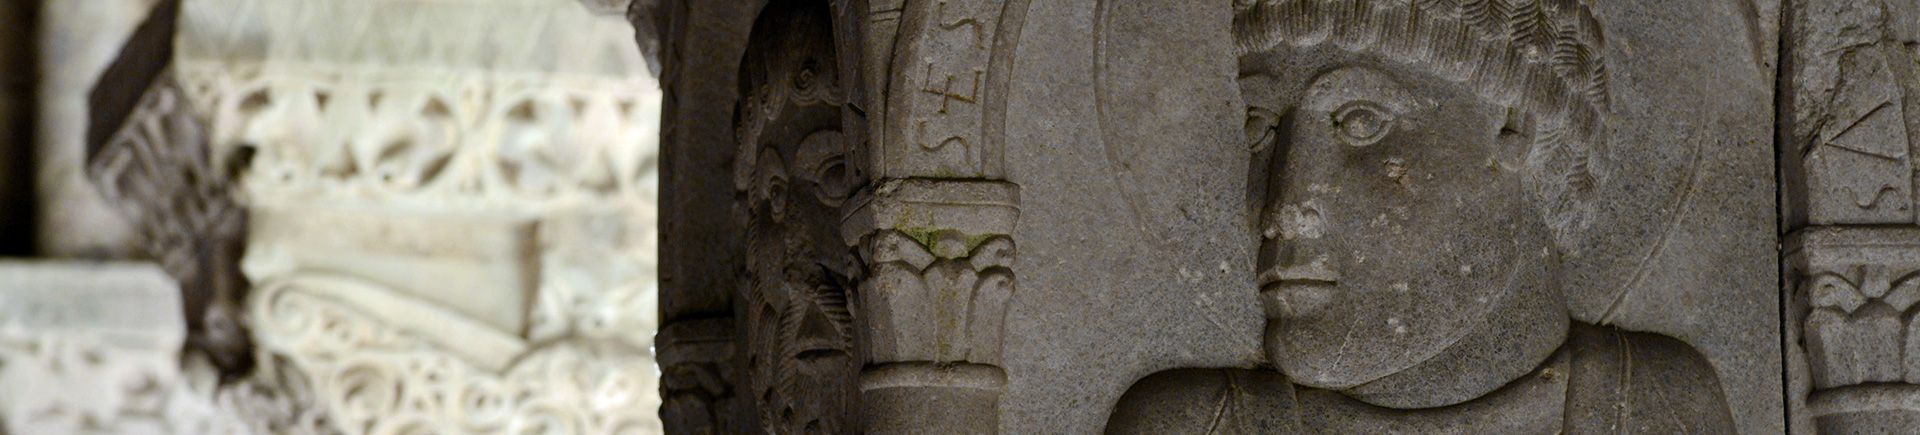 Détail chapiteau - Cloître de l'abbaye de Moissac